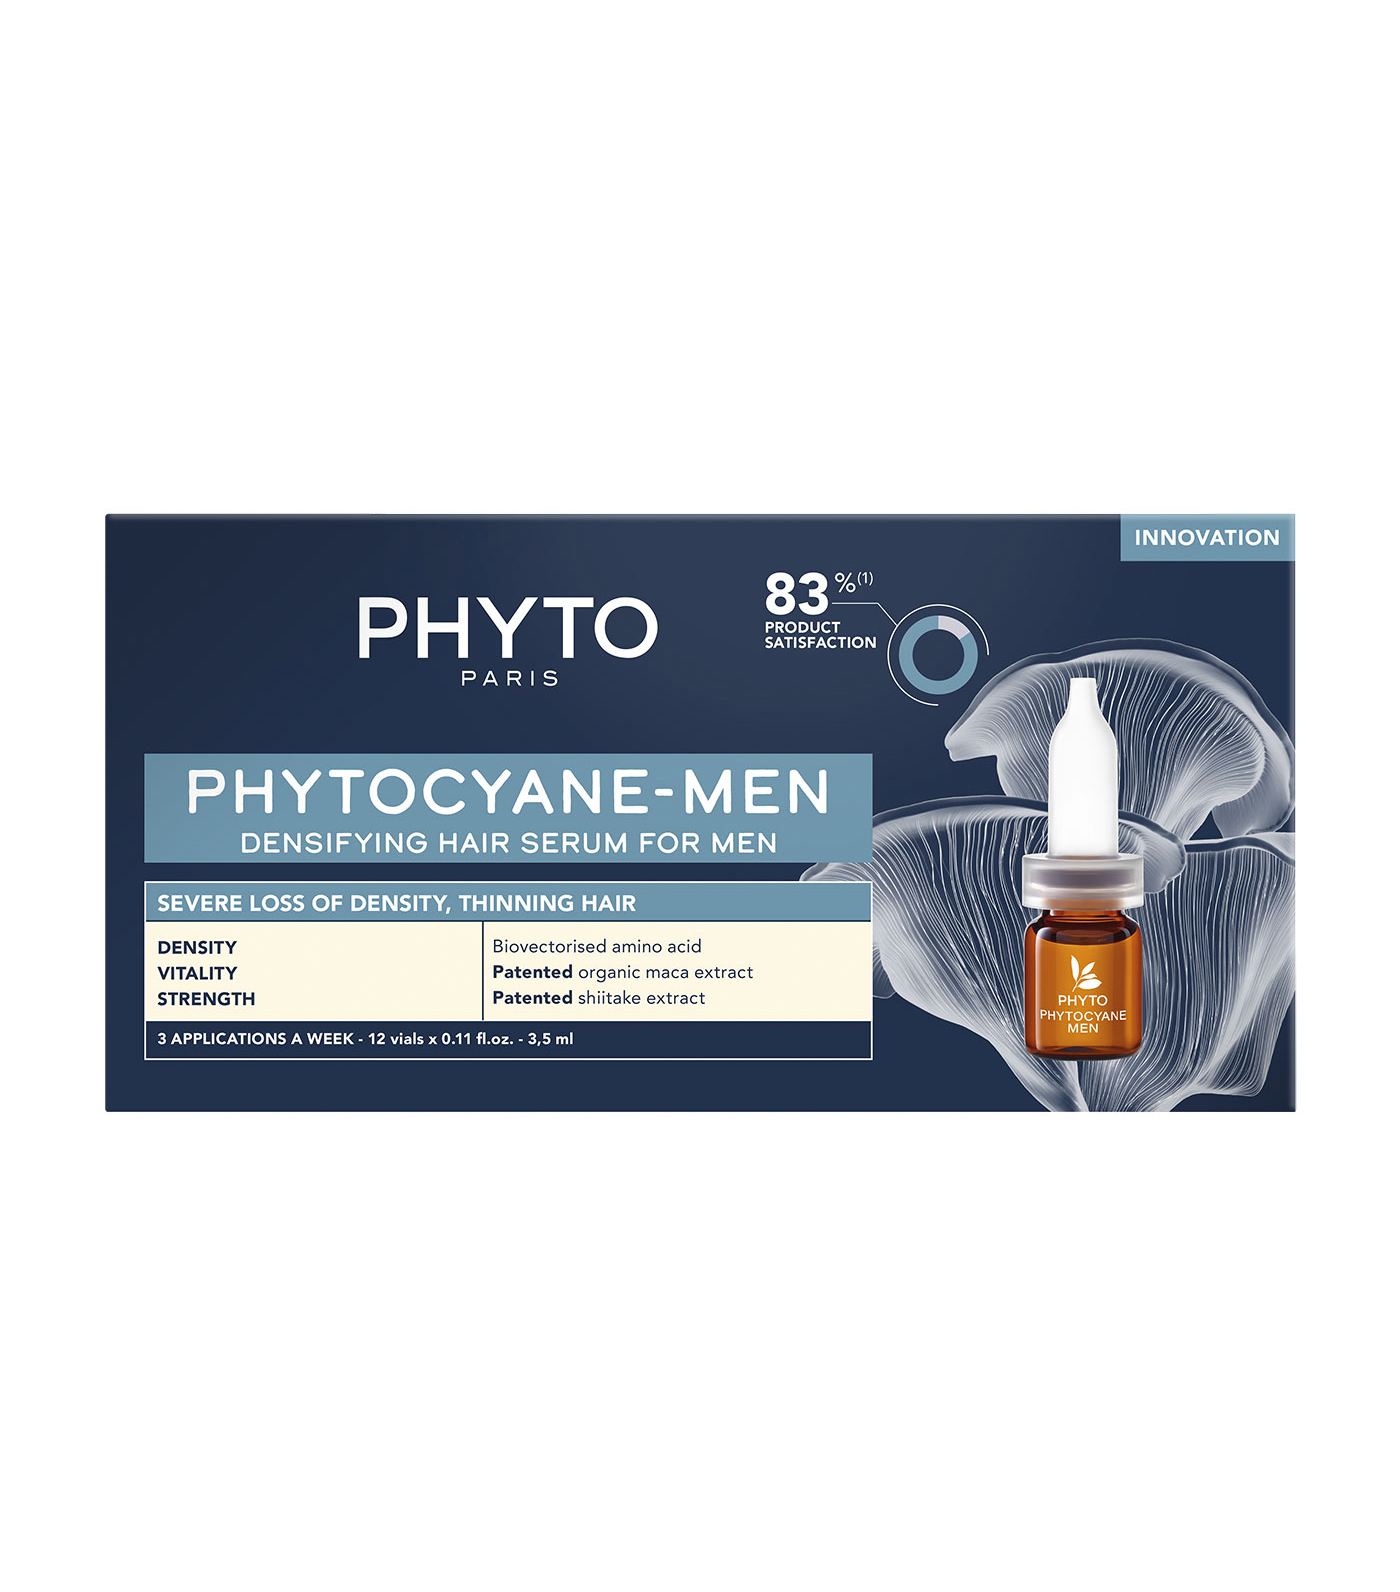 Phytocyane-Men Densifying Hair Serum for Men